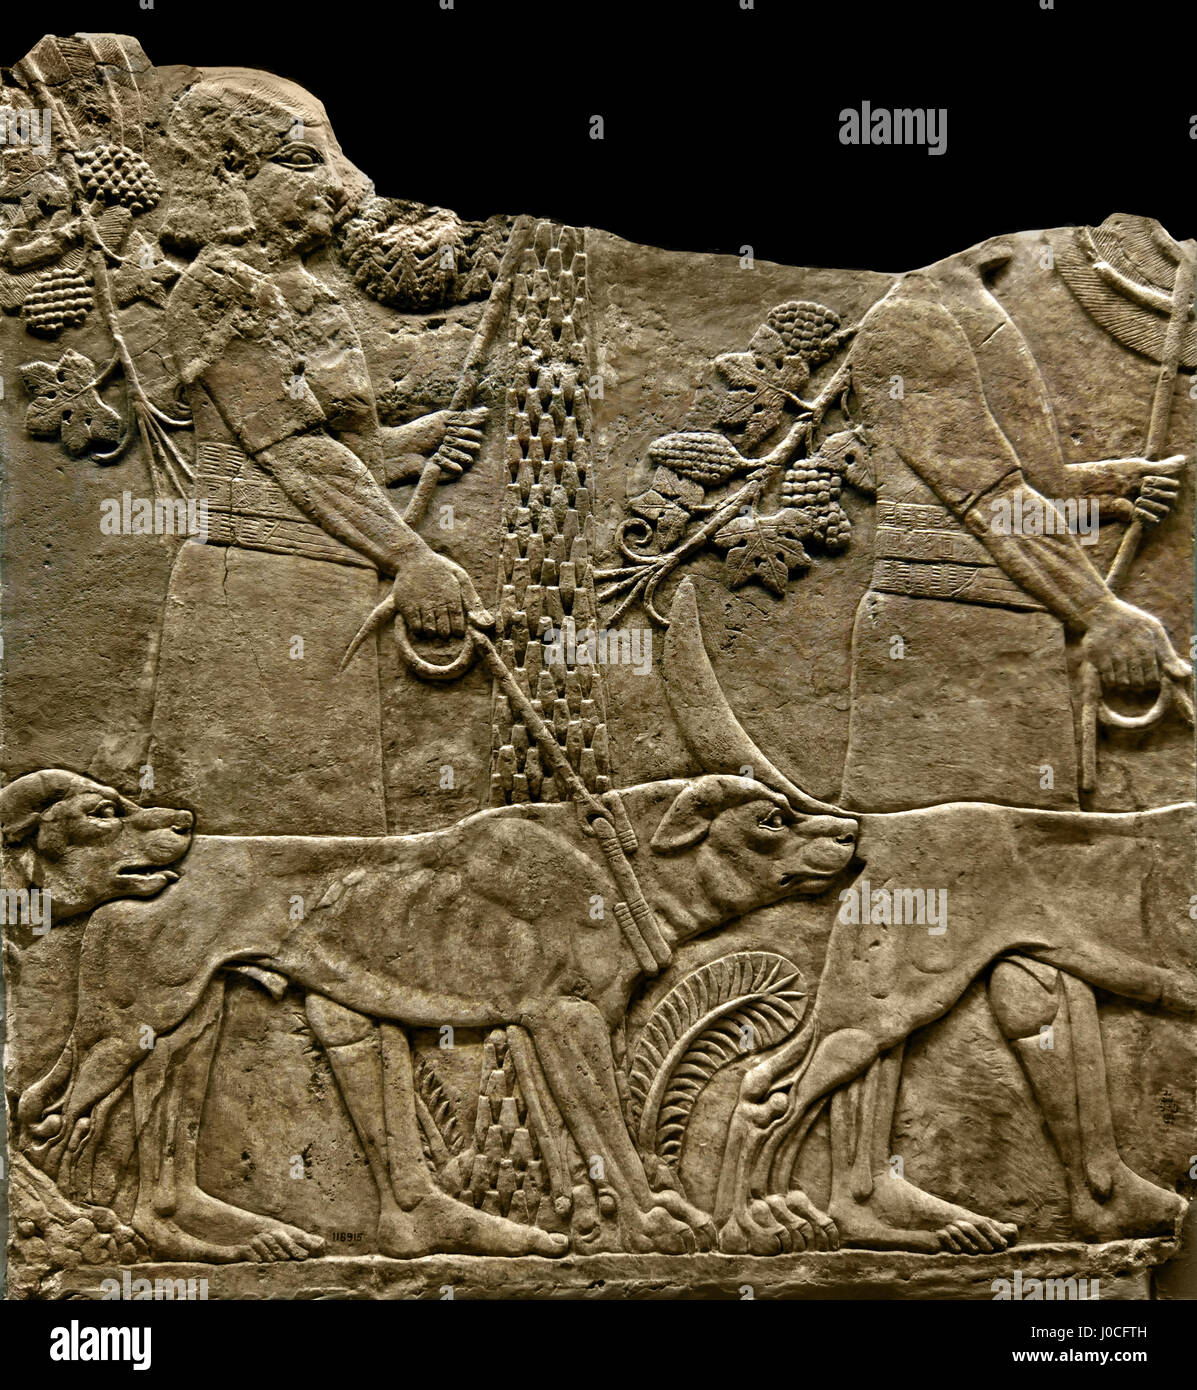 Jäger mit Hunden in einem Garten Nord-Palast von Ninive 645-635 v. Chr. Mesopotamien Irak Assyrien (König Assurbanipal oder Ashshurbanipal, Sohn von Esarhaddon und der letzte starke König des neuassyrischen Reiches (934 – 609 v. Chr.) Stockfoto